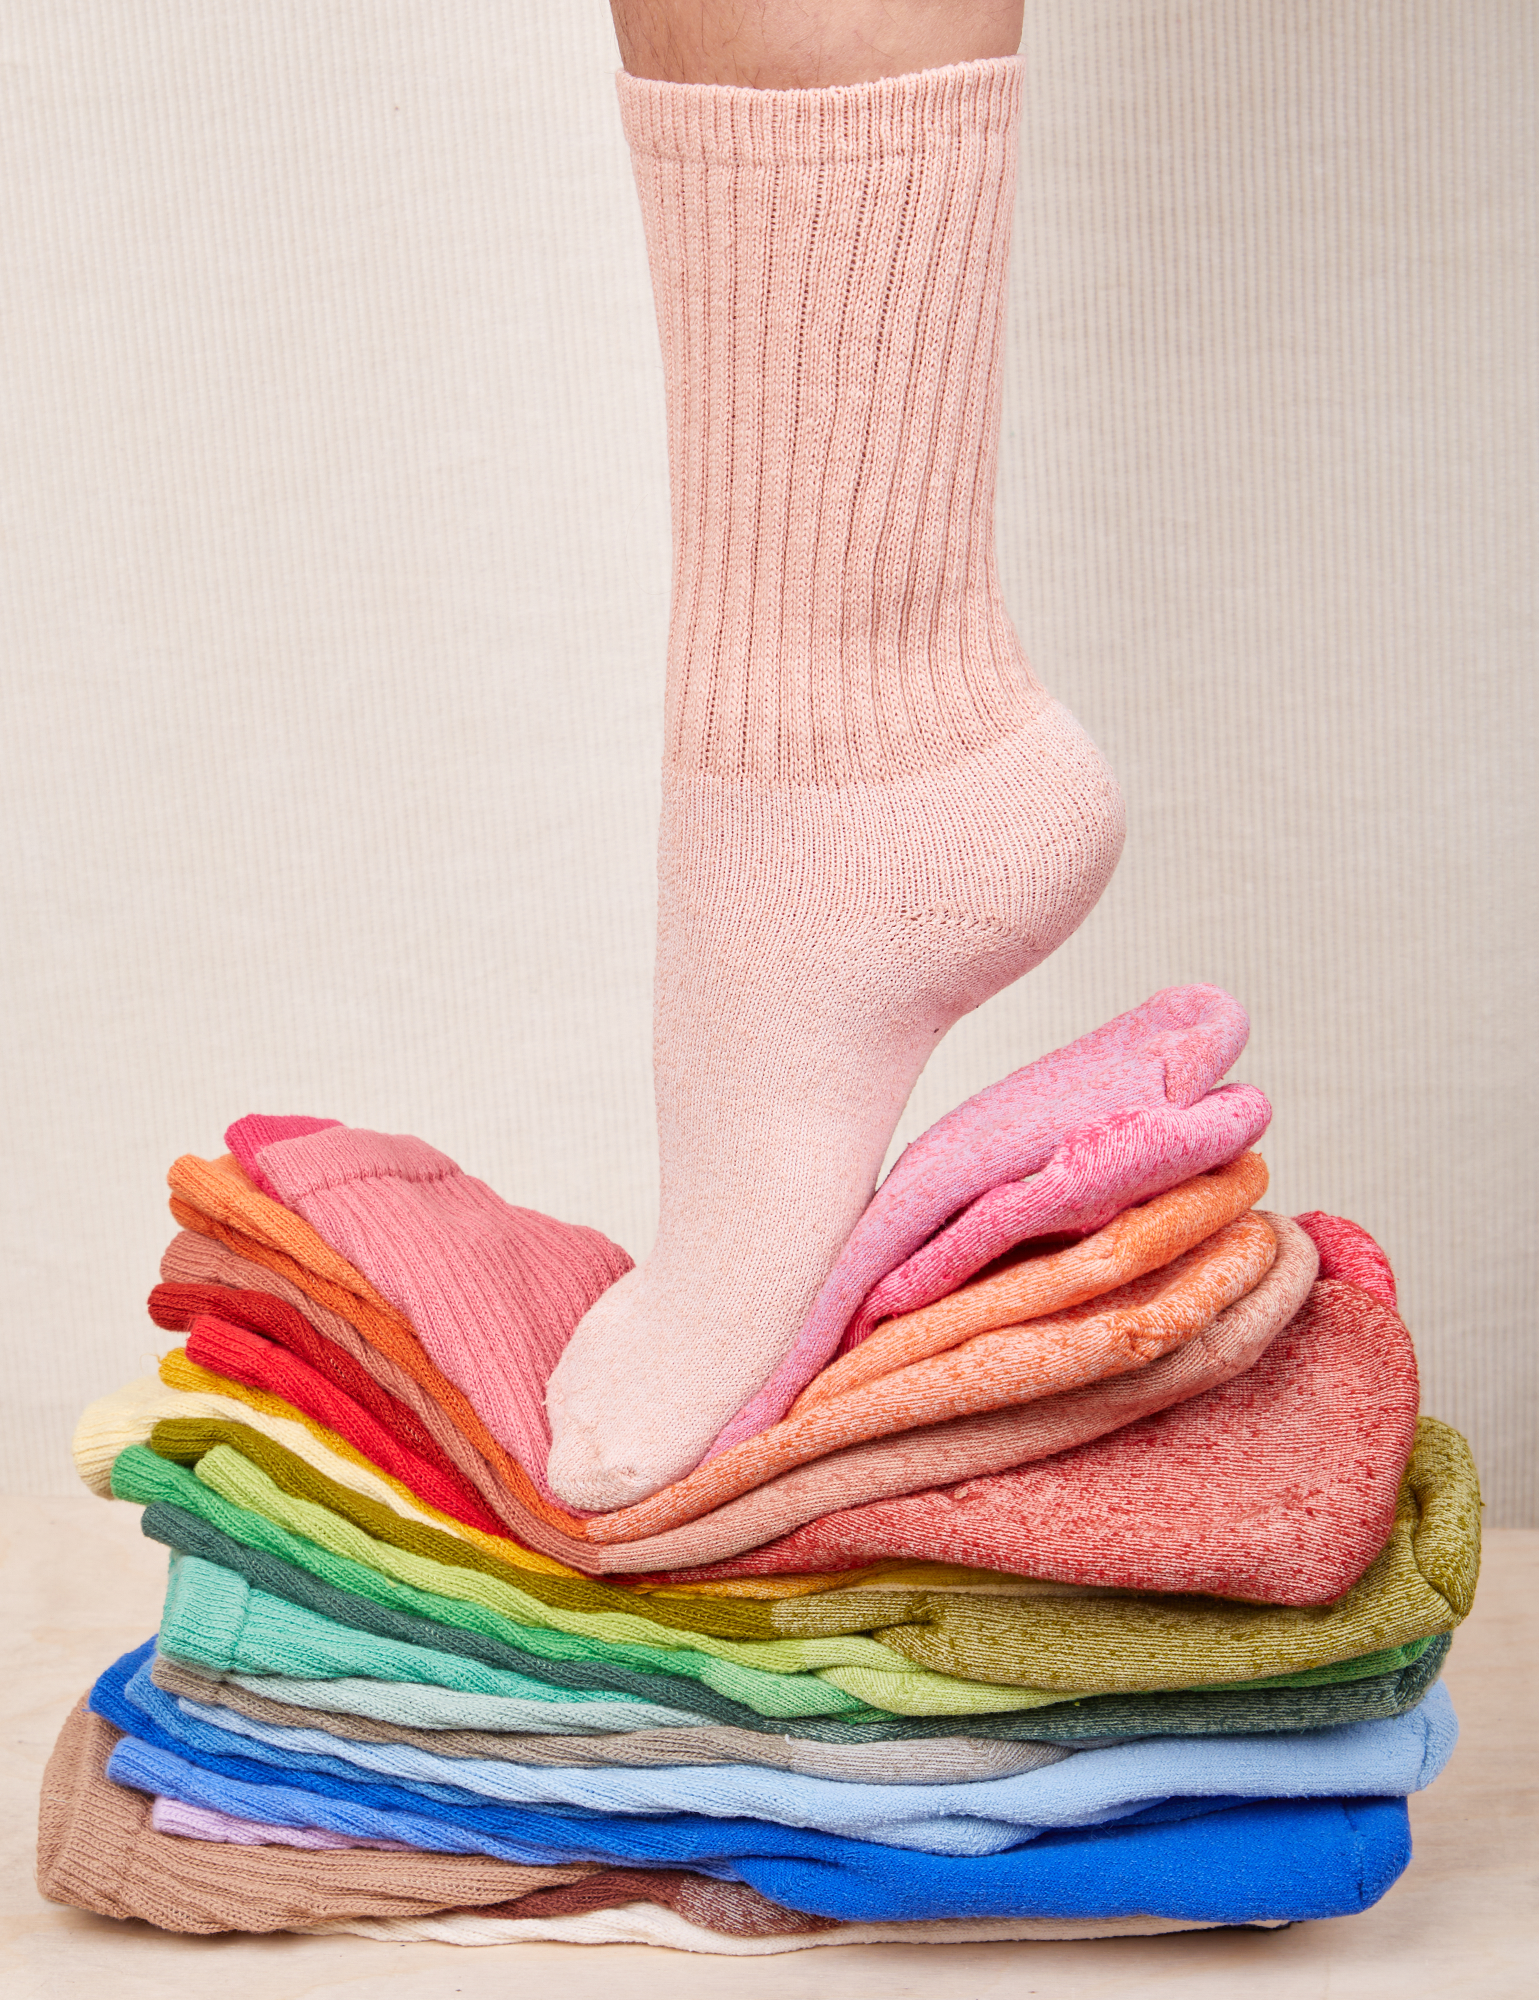 Socks – BIG BUD PRESS